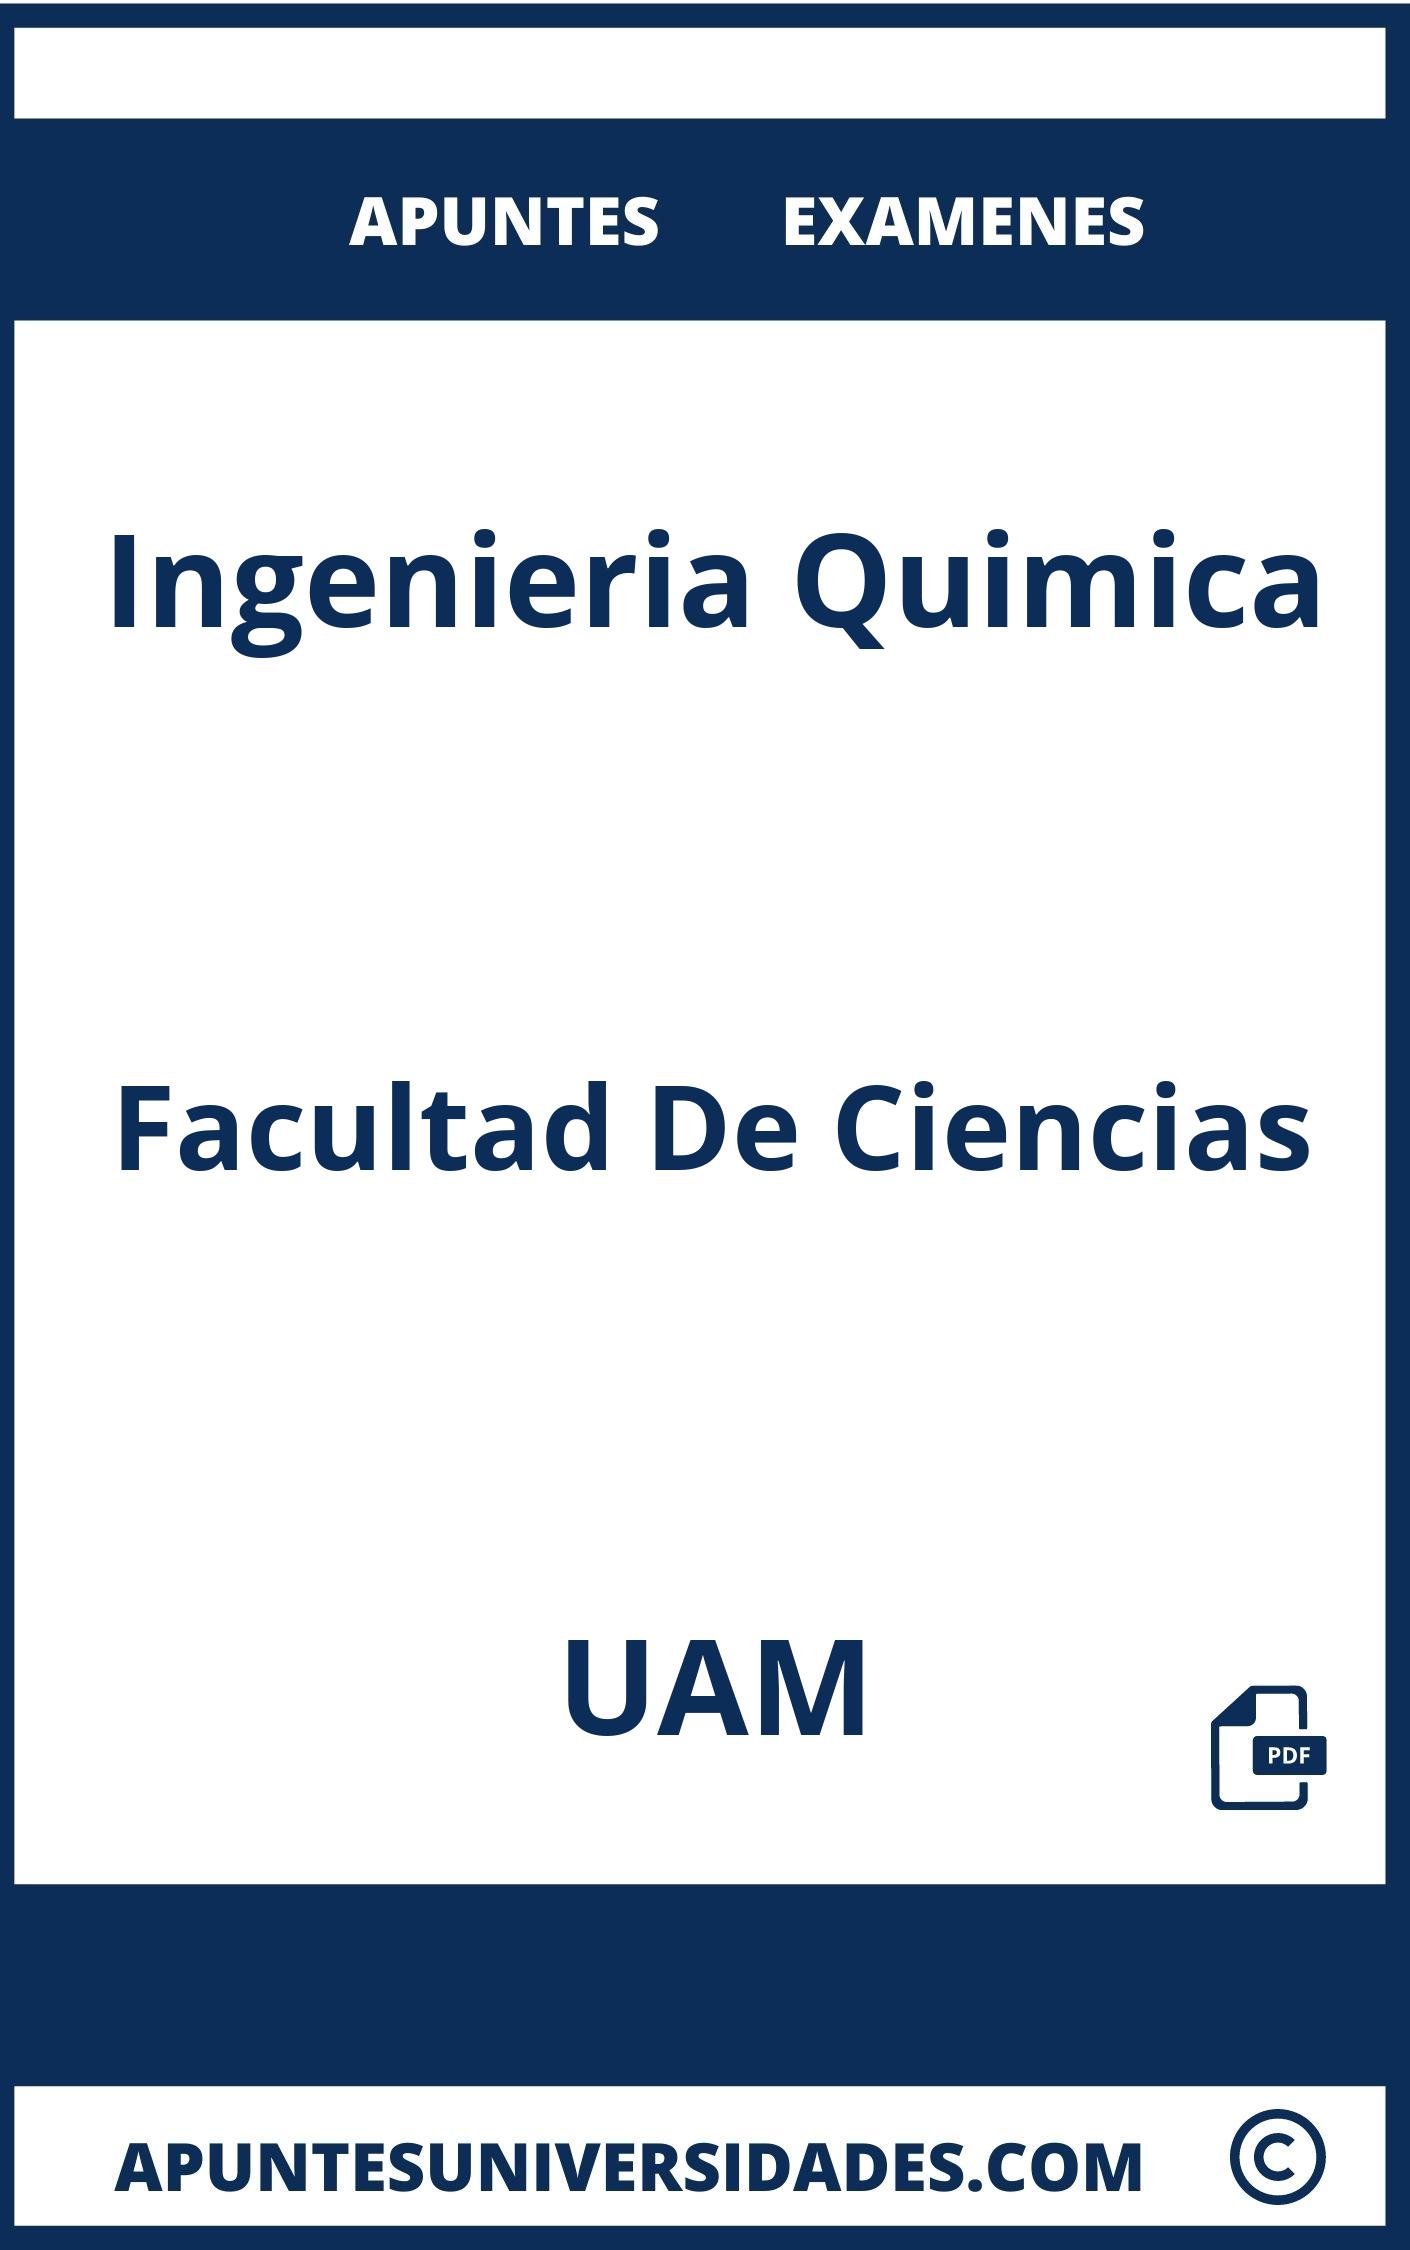 Examenes y Apuntes Ingenieria Quimica UAM